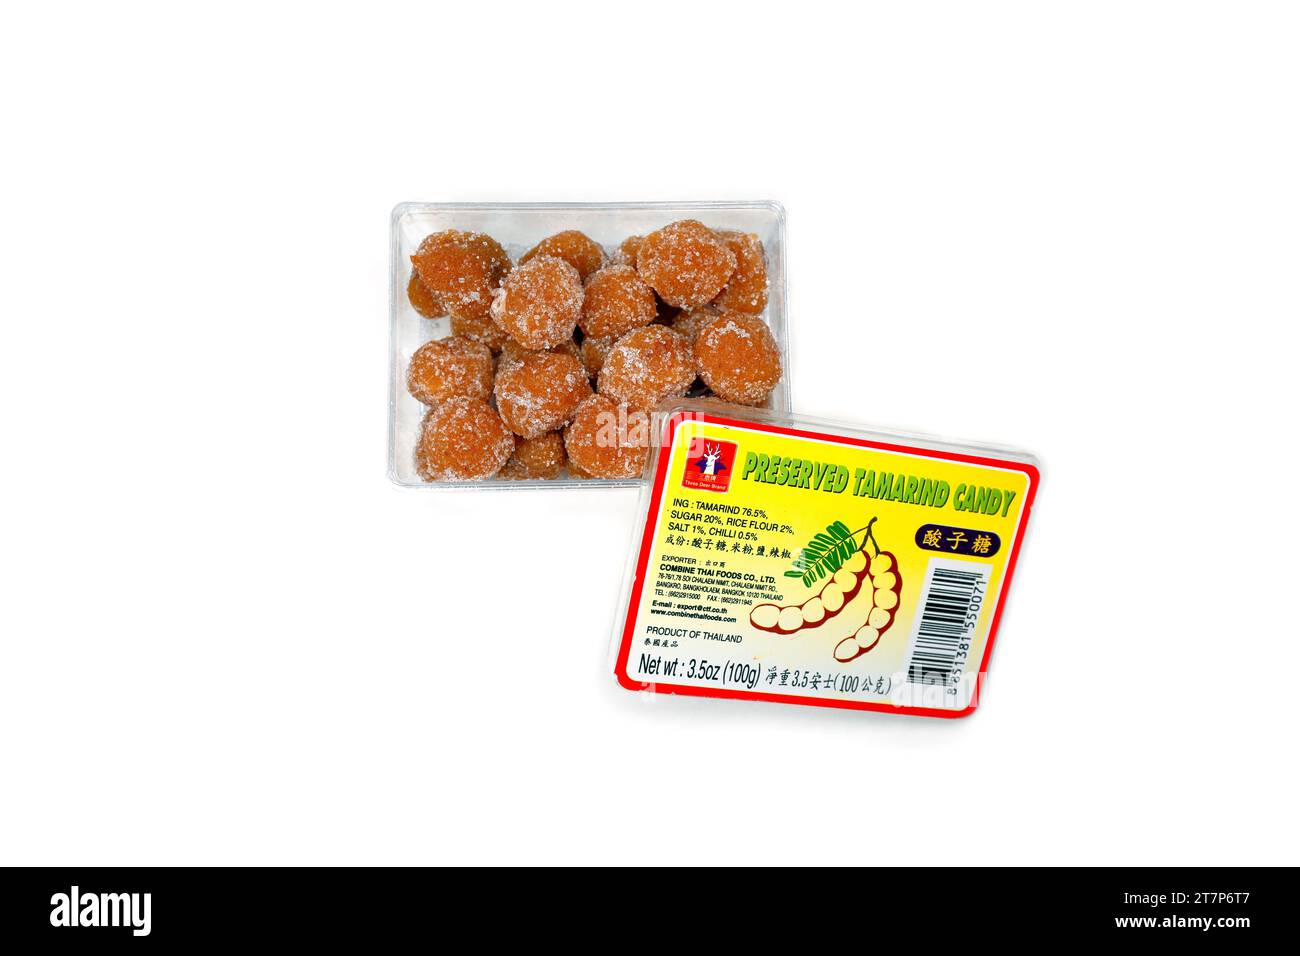 酸子糖 di caramelle tamarinde conservate del marchio Three Deer, tamarindo candito, isolato su uno sfondo bianco. immagine ritagliata per uso illustrativo ed editoriale. Foto Stock